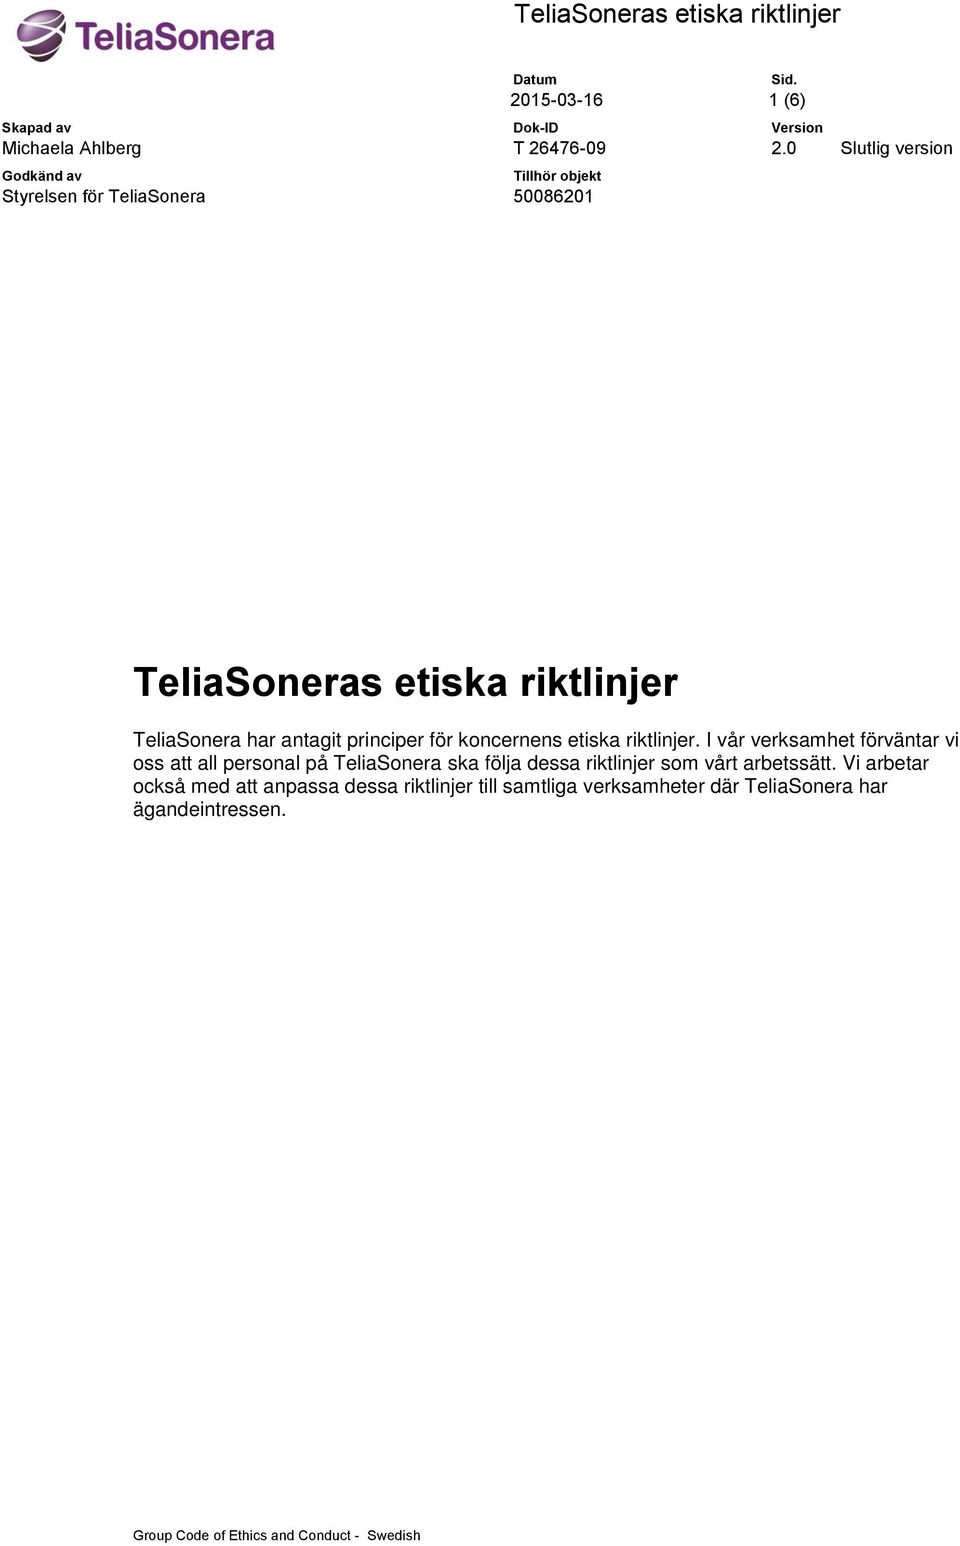 I vår verksamhet förväntar vi oss att all personal på TeliaSonera ska följa dessa